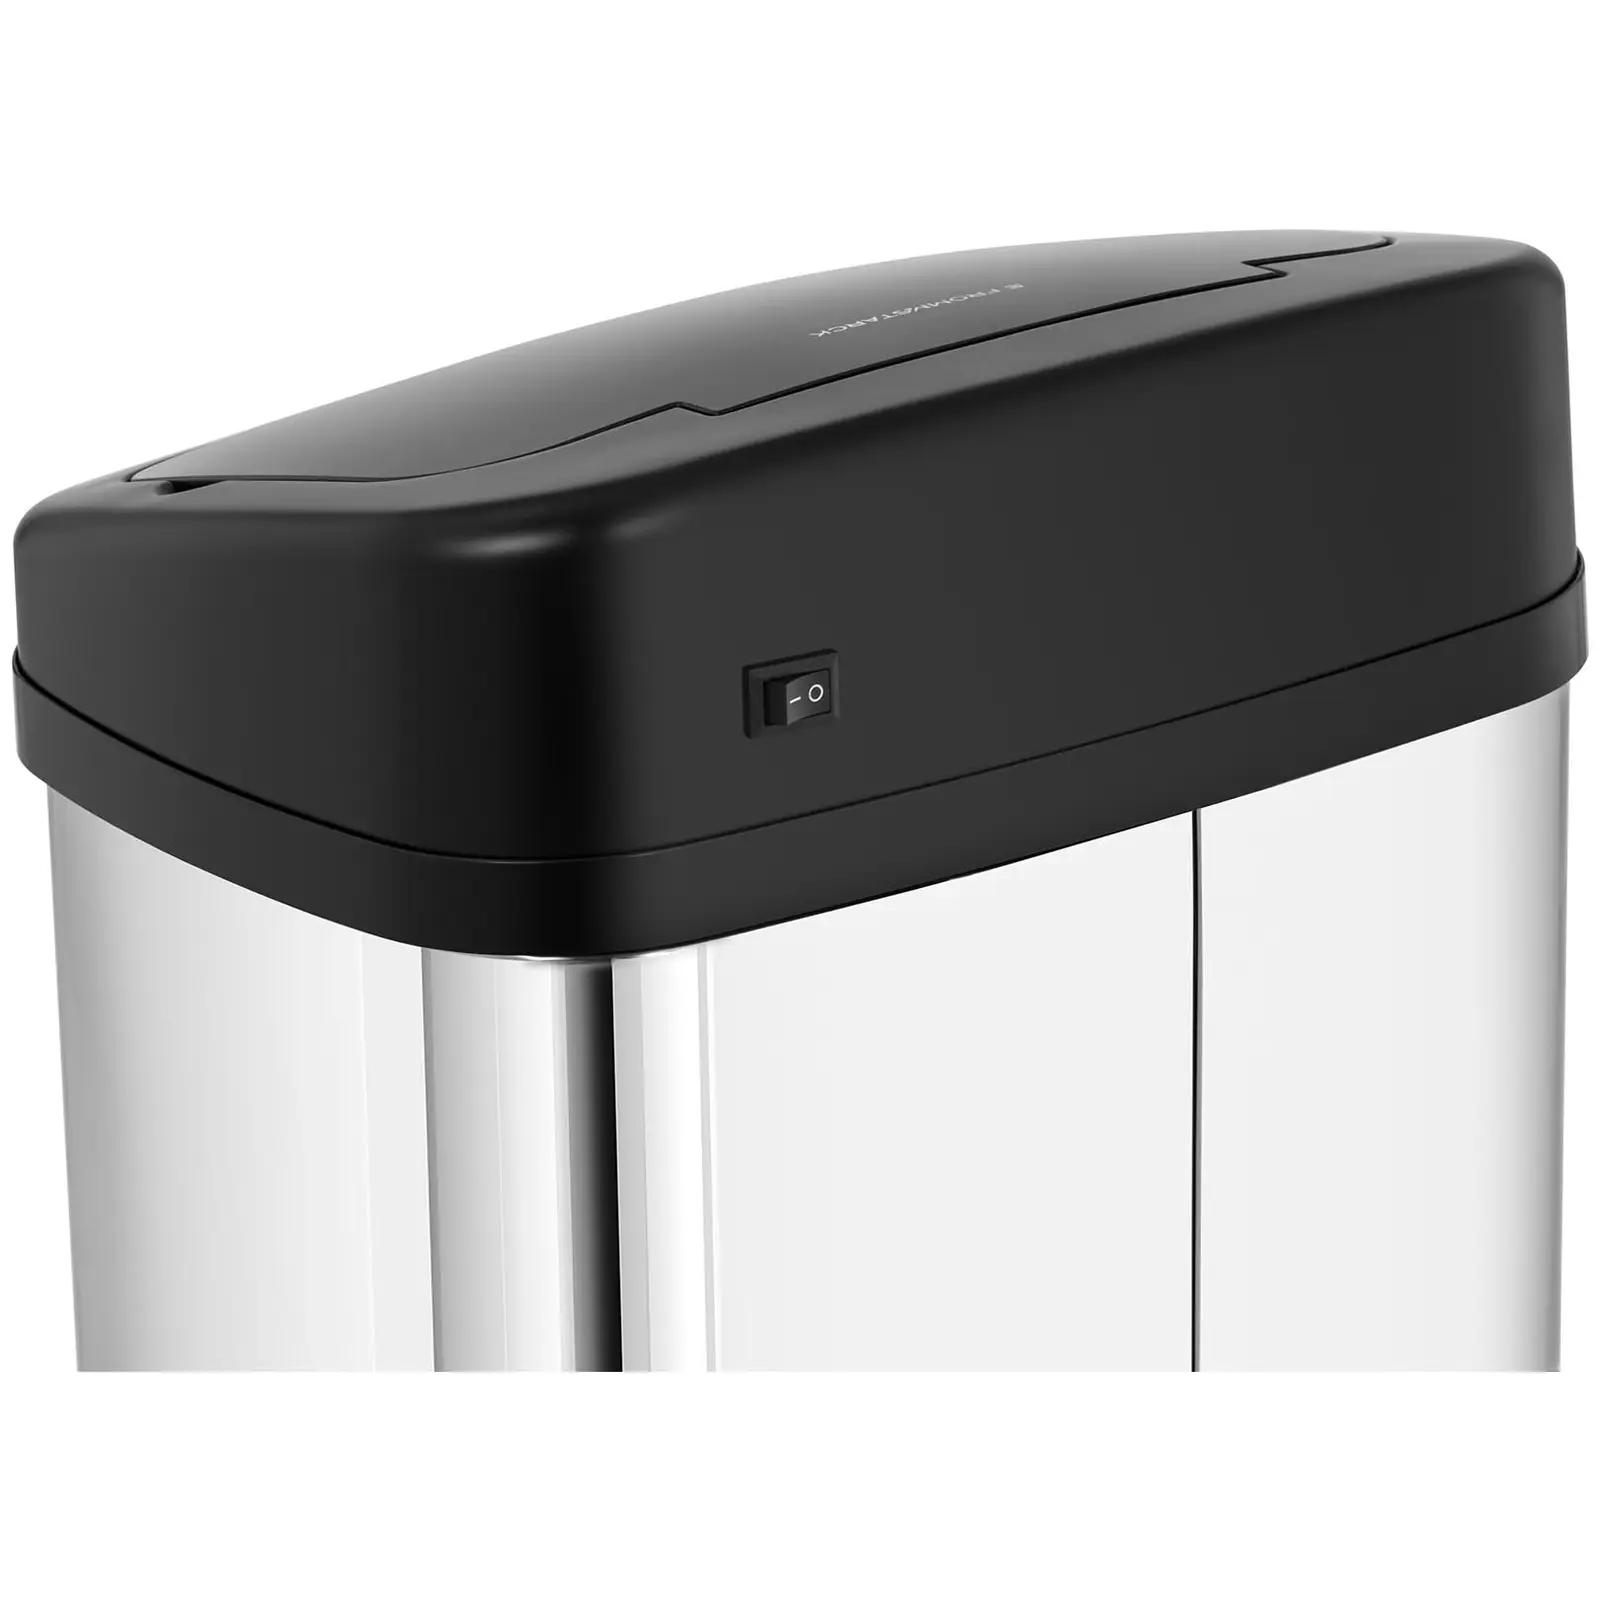 Cubo de basura con sensor - 40 L - rectangular